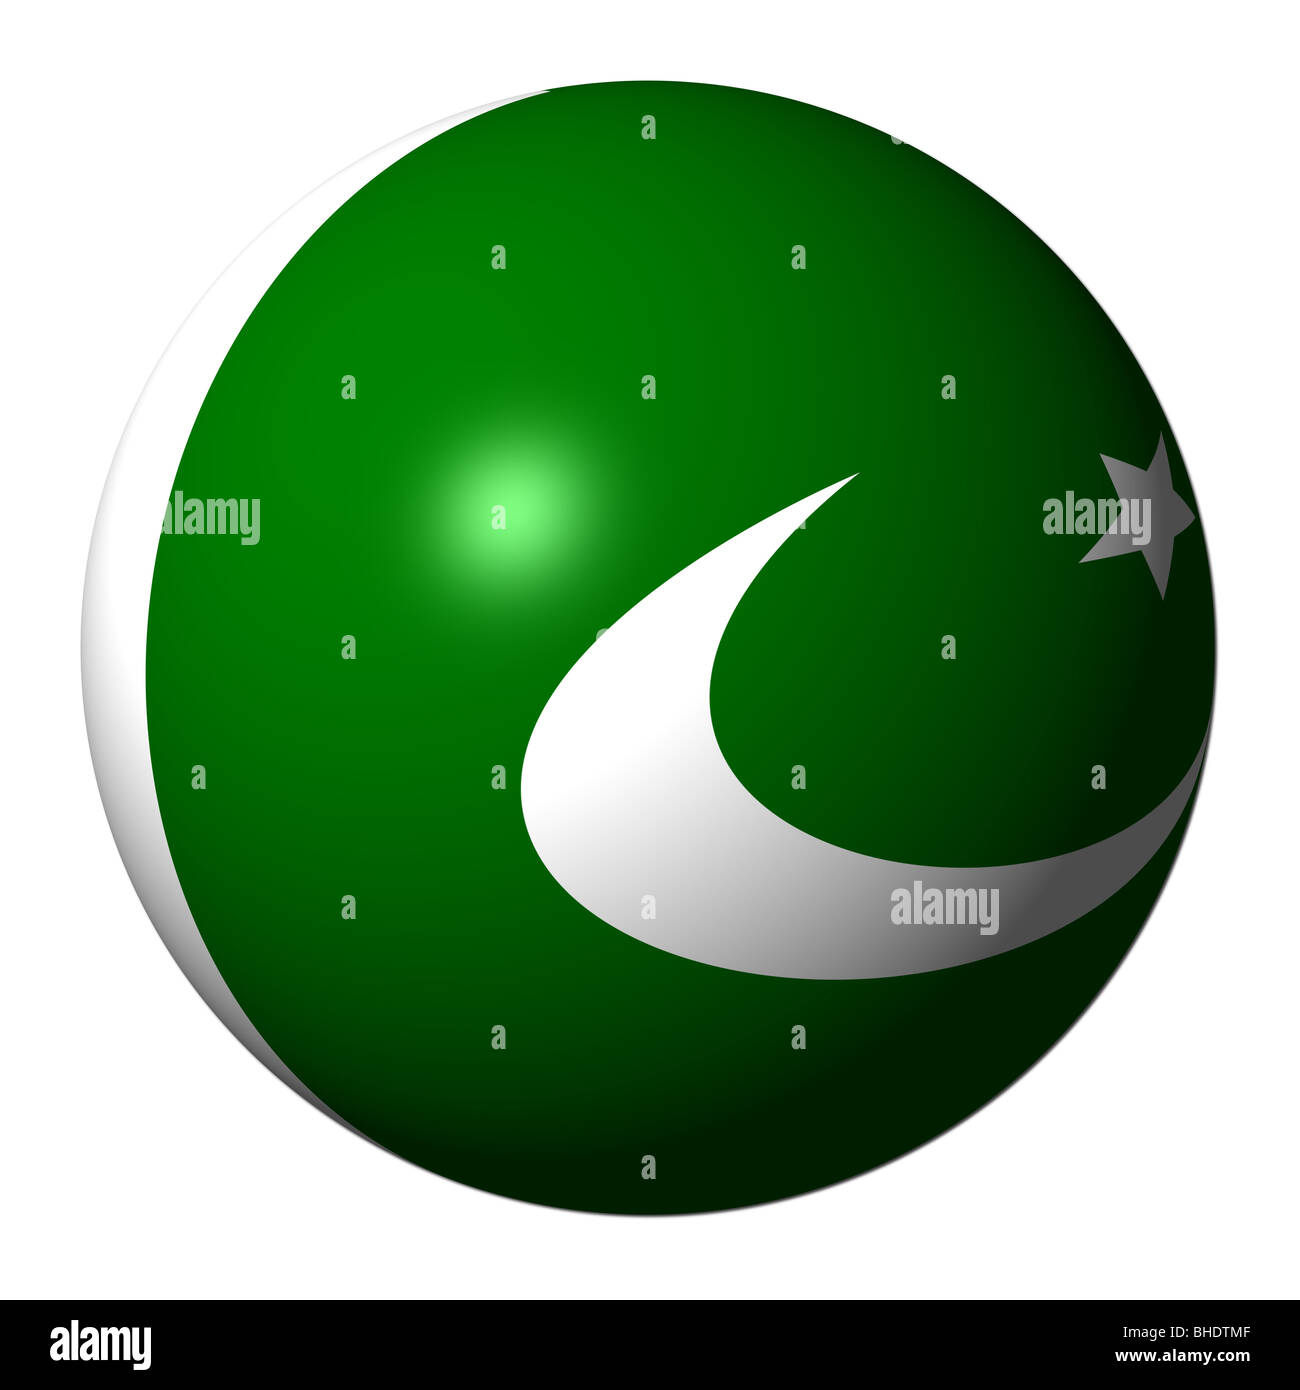 Pakistani flag sphere isolated on white illustration Stock Photo